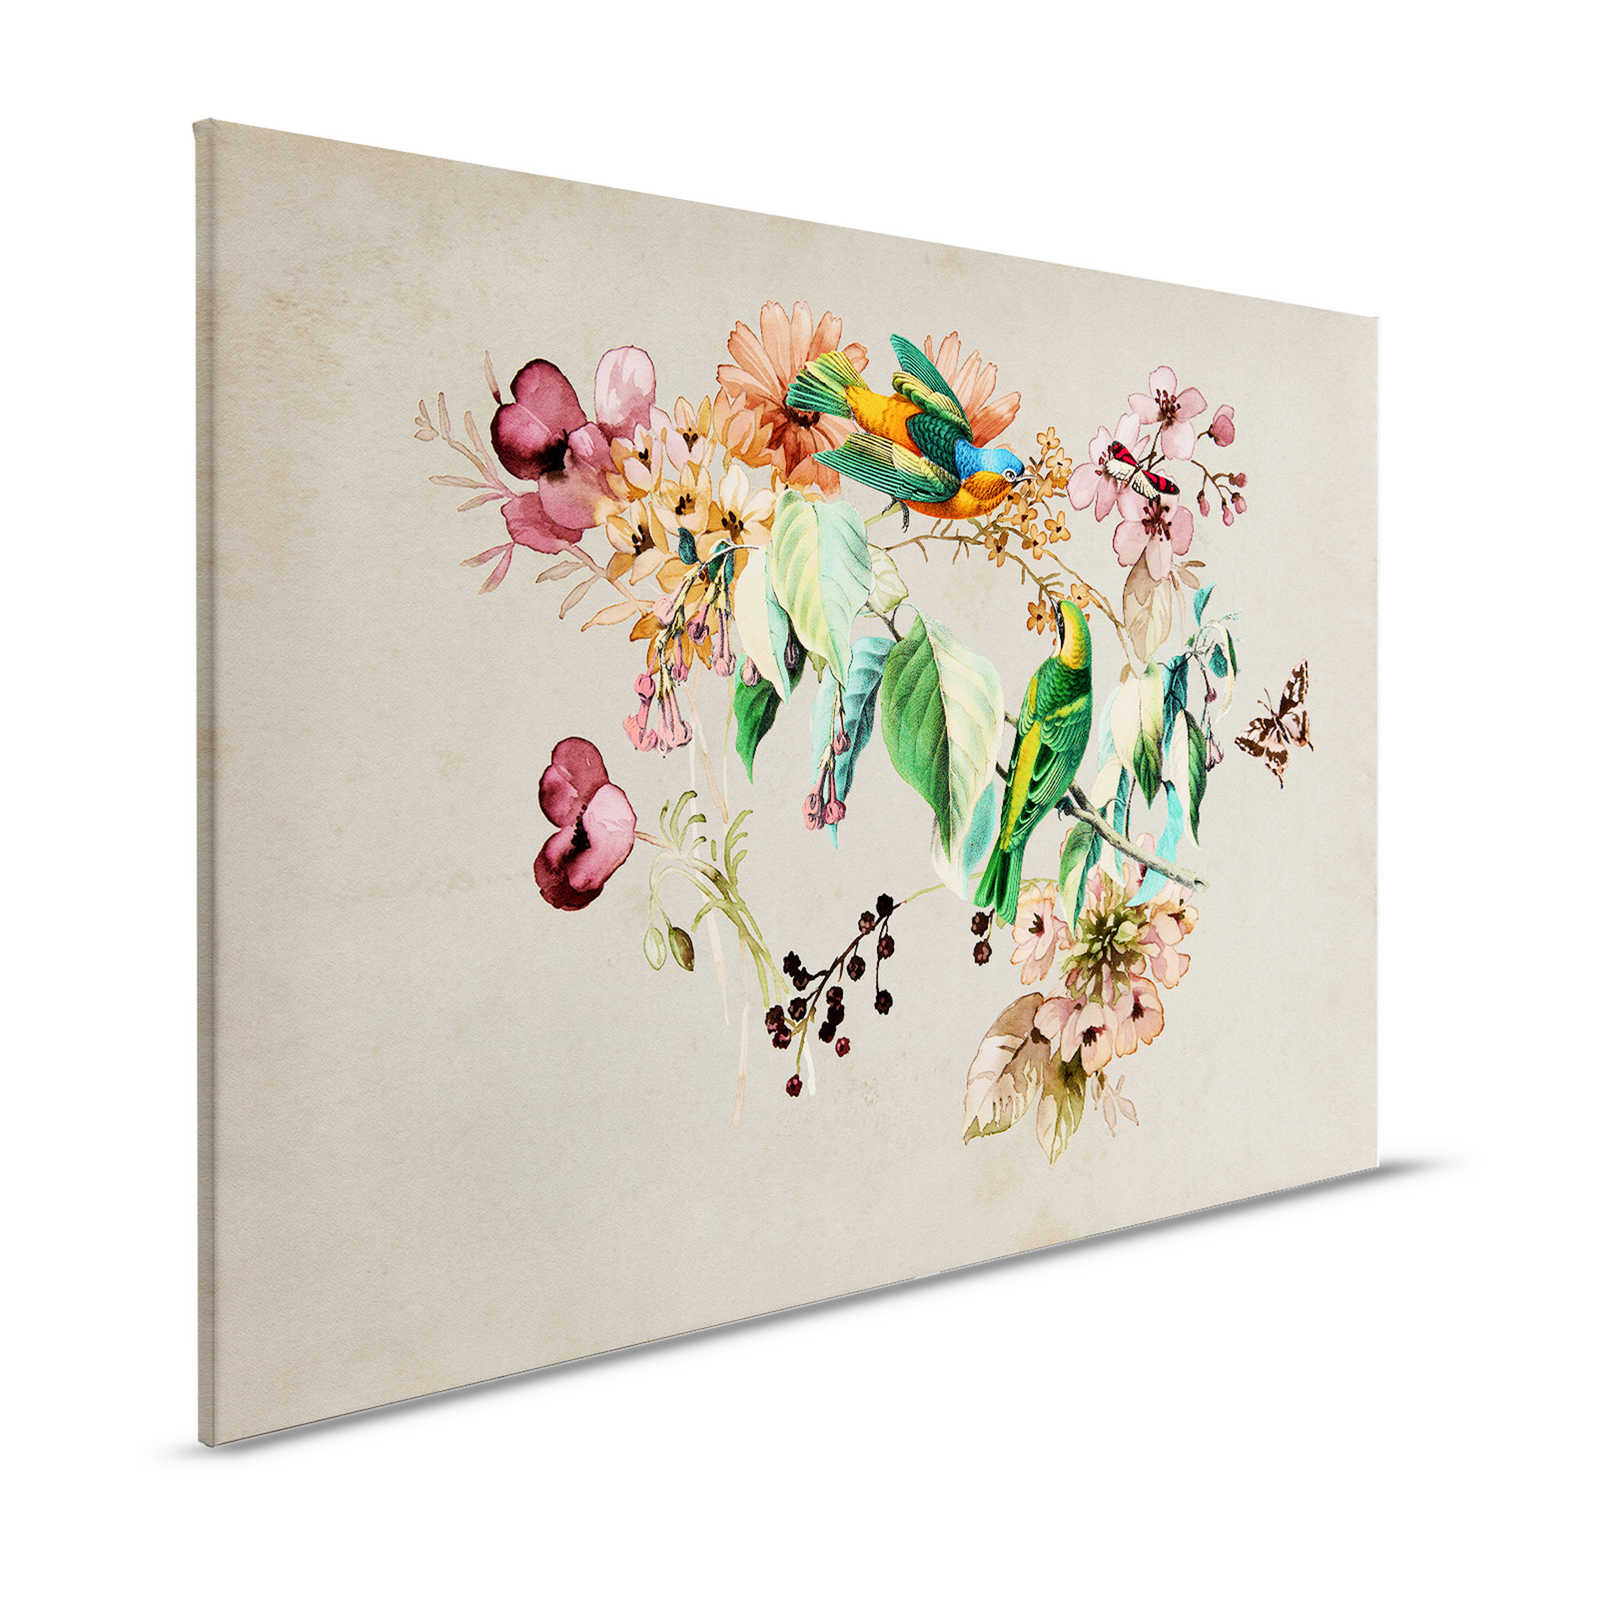 Nido de amor 1 - Cuadro en lienzo con flores de acuarela y pájaros de colores - 1,20 m x 0,80 m
